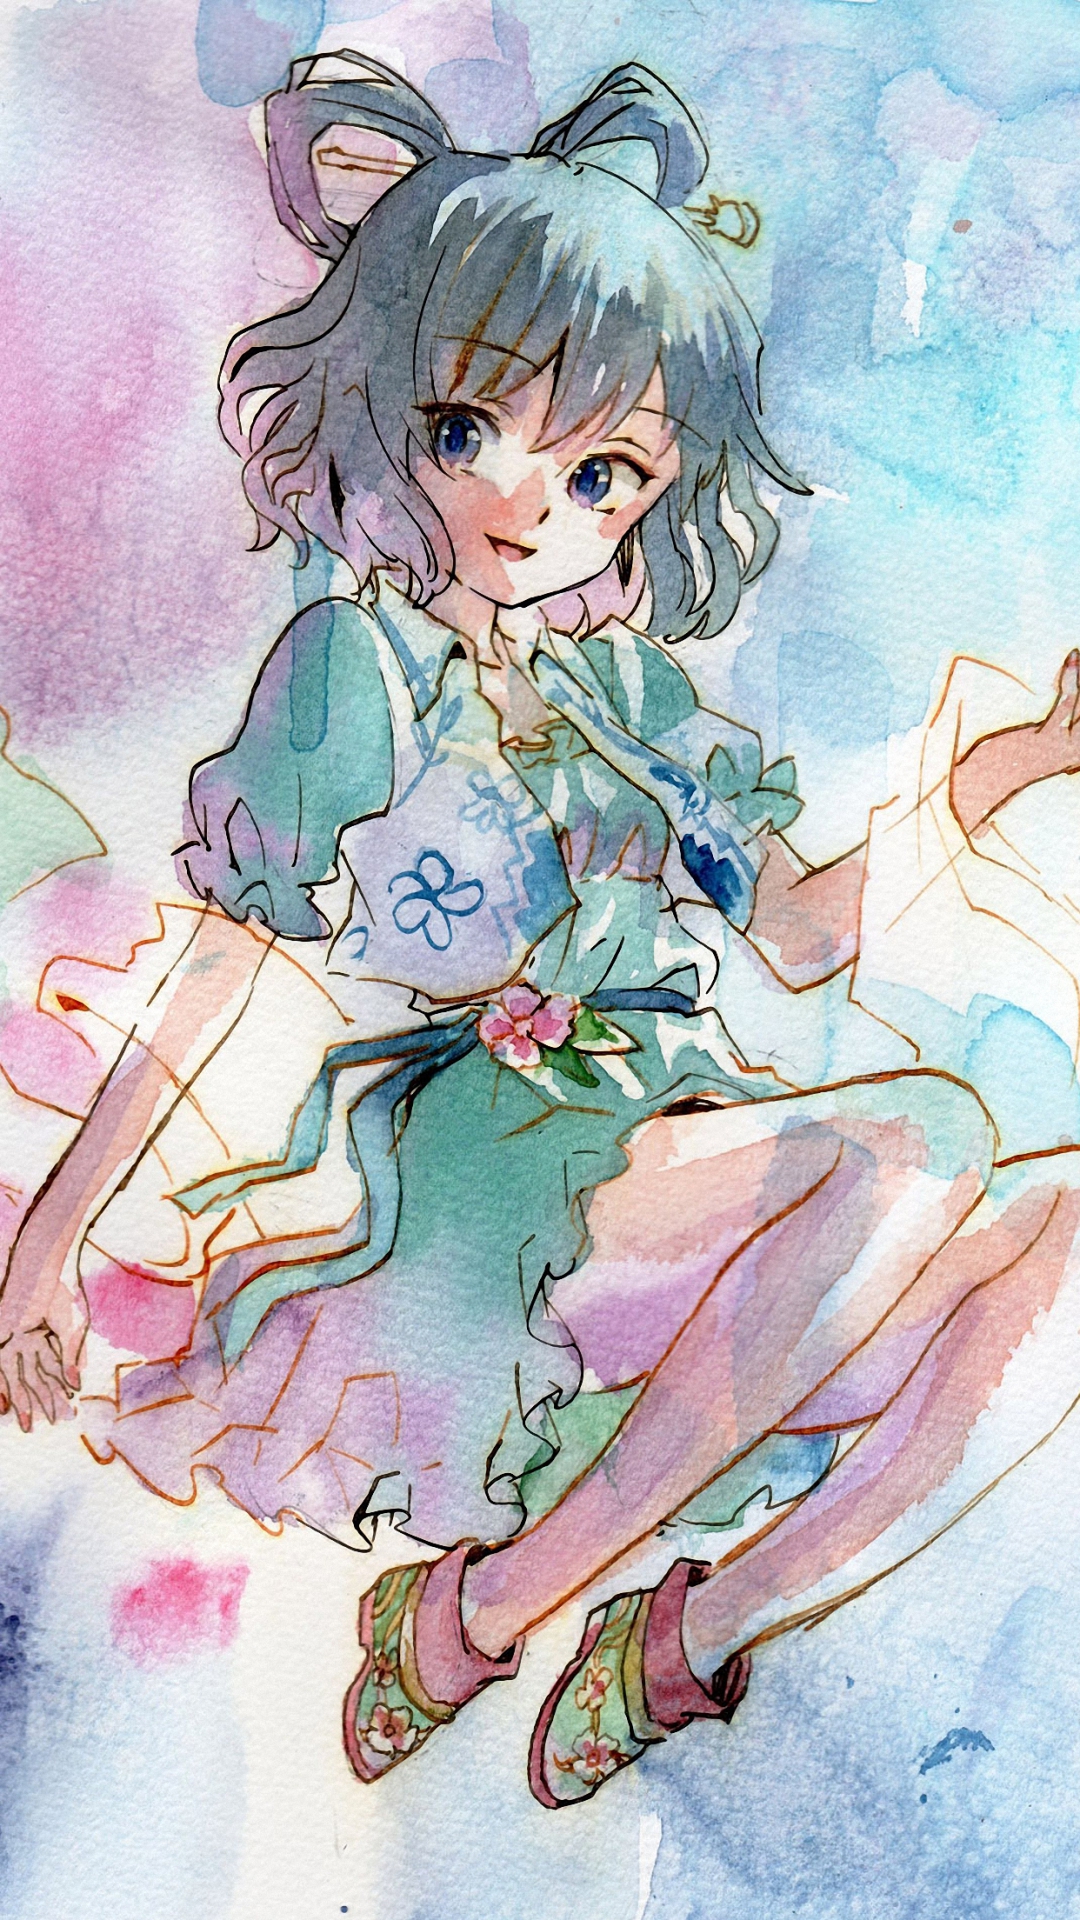 [47+] Cute Anime Girl iPhone Wallpaper - WallpaperSafari